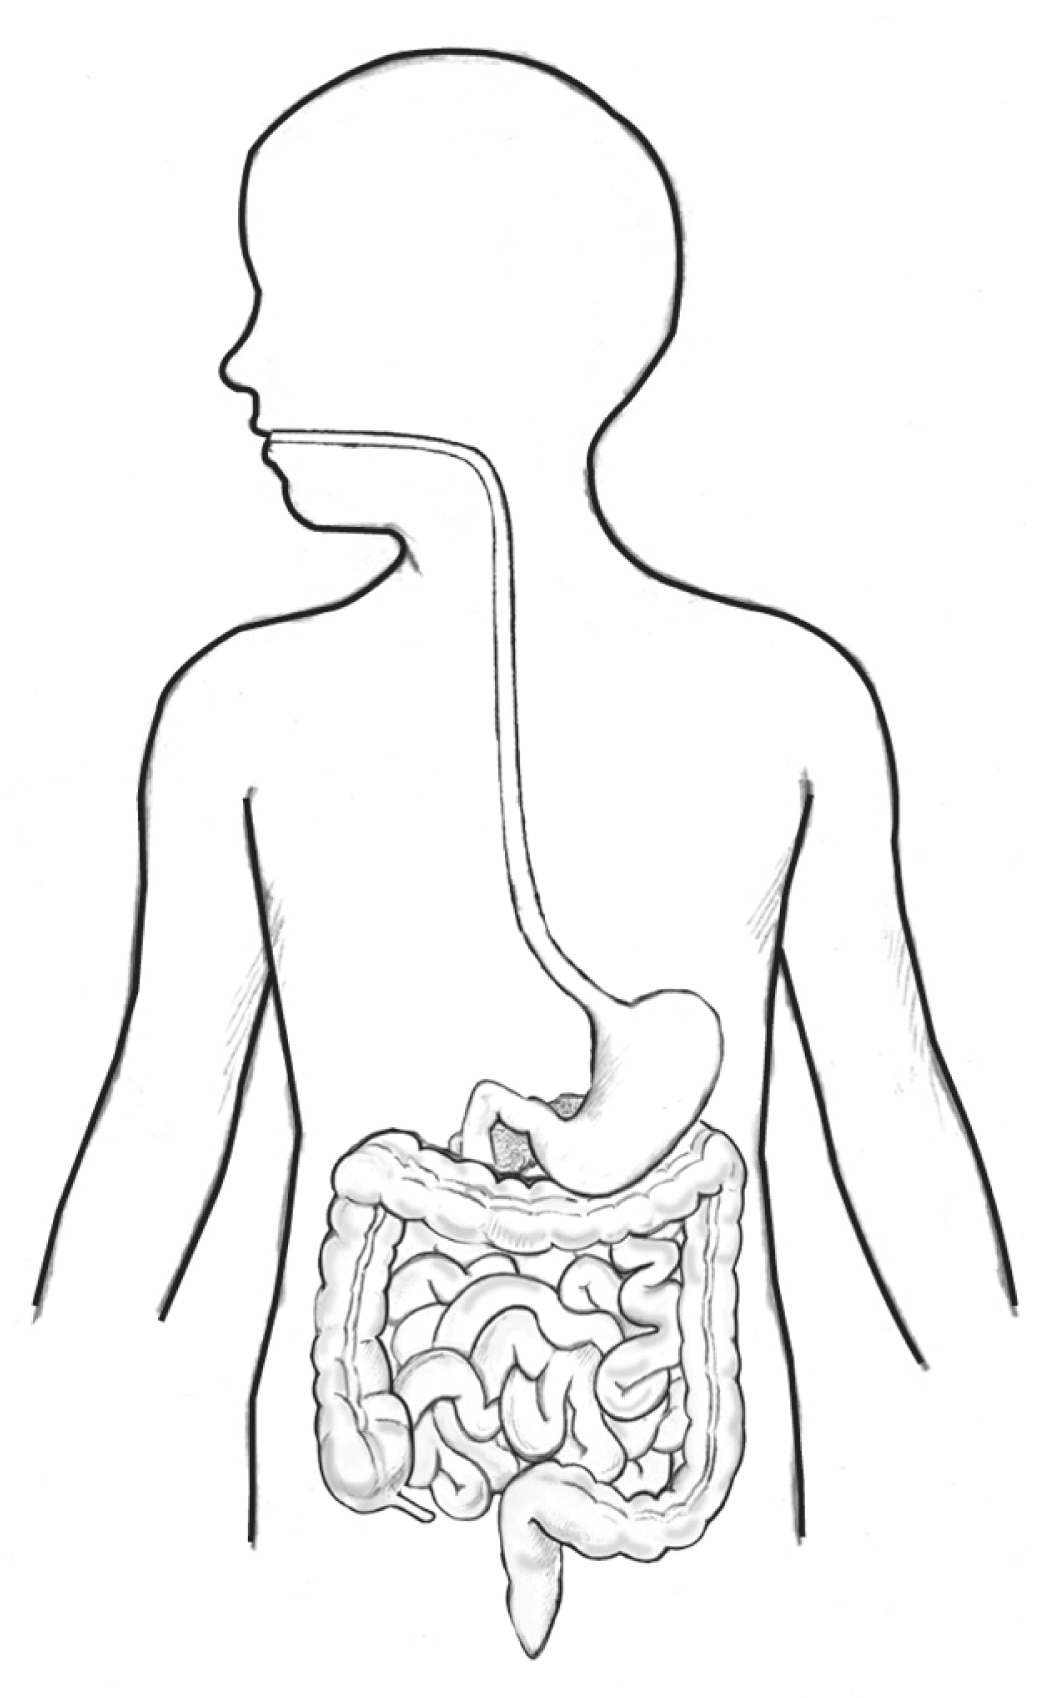 Illustration of the digestive system labeled - Media Asset - NIDDK